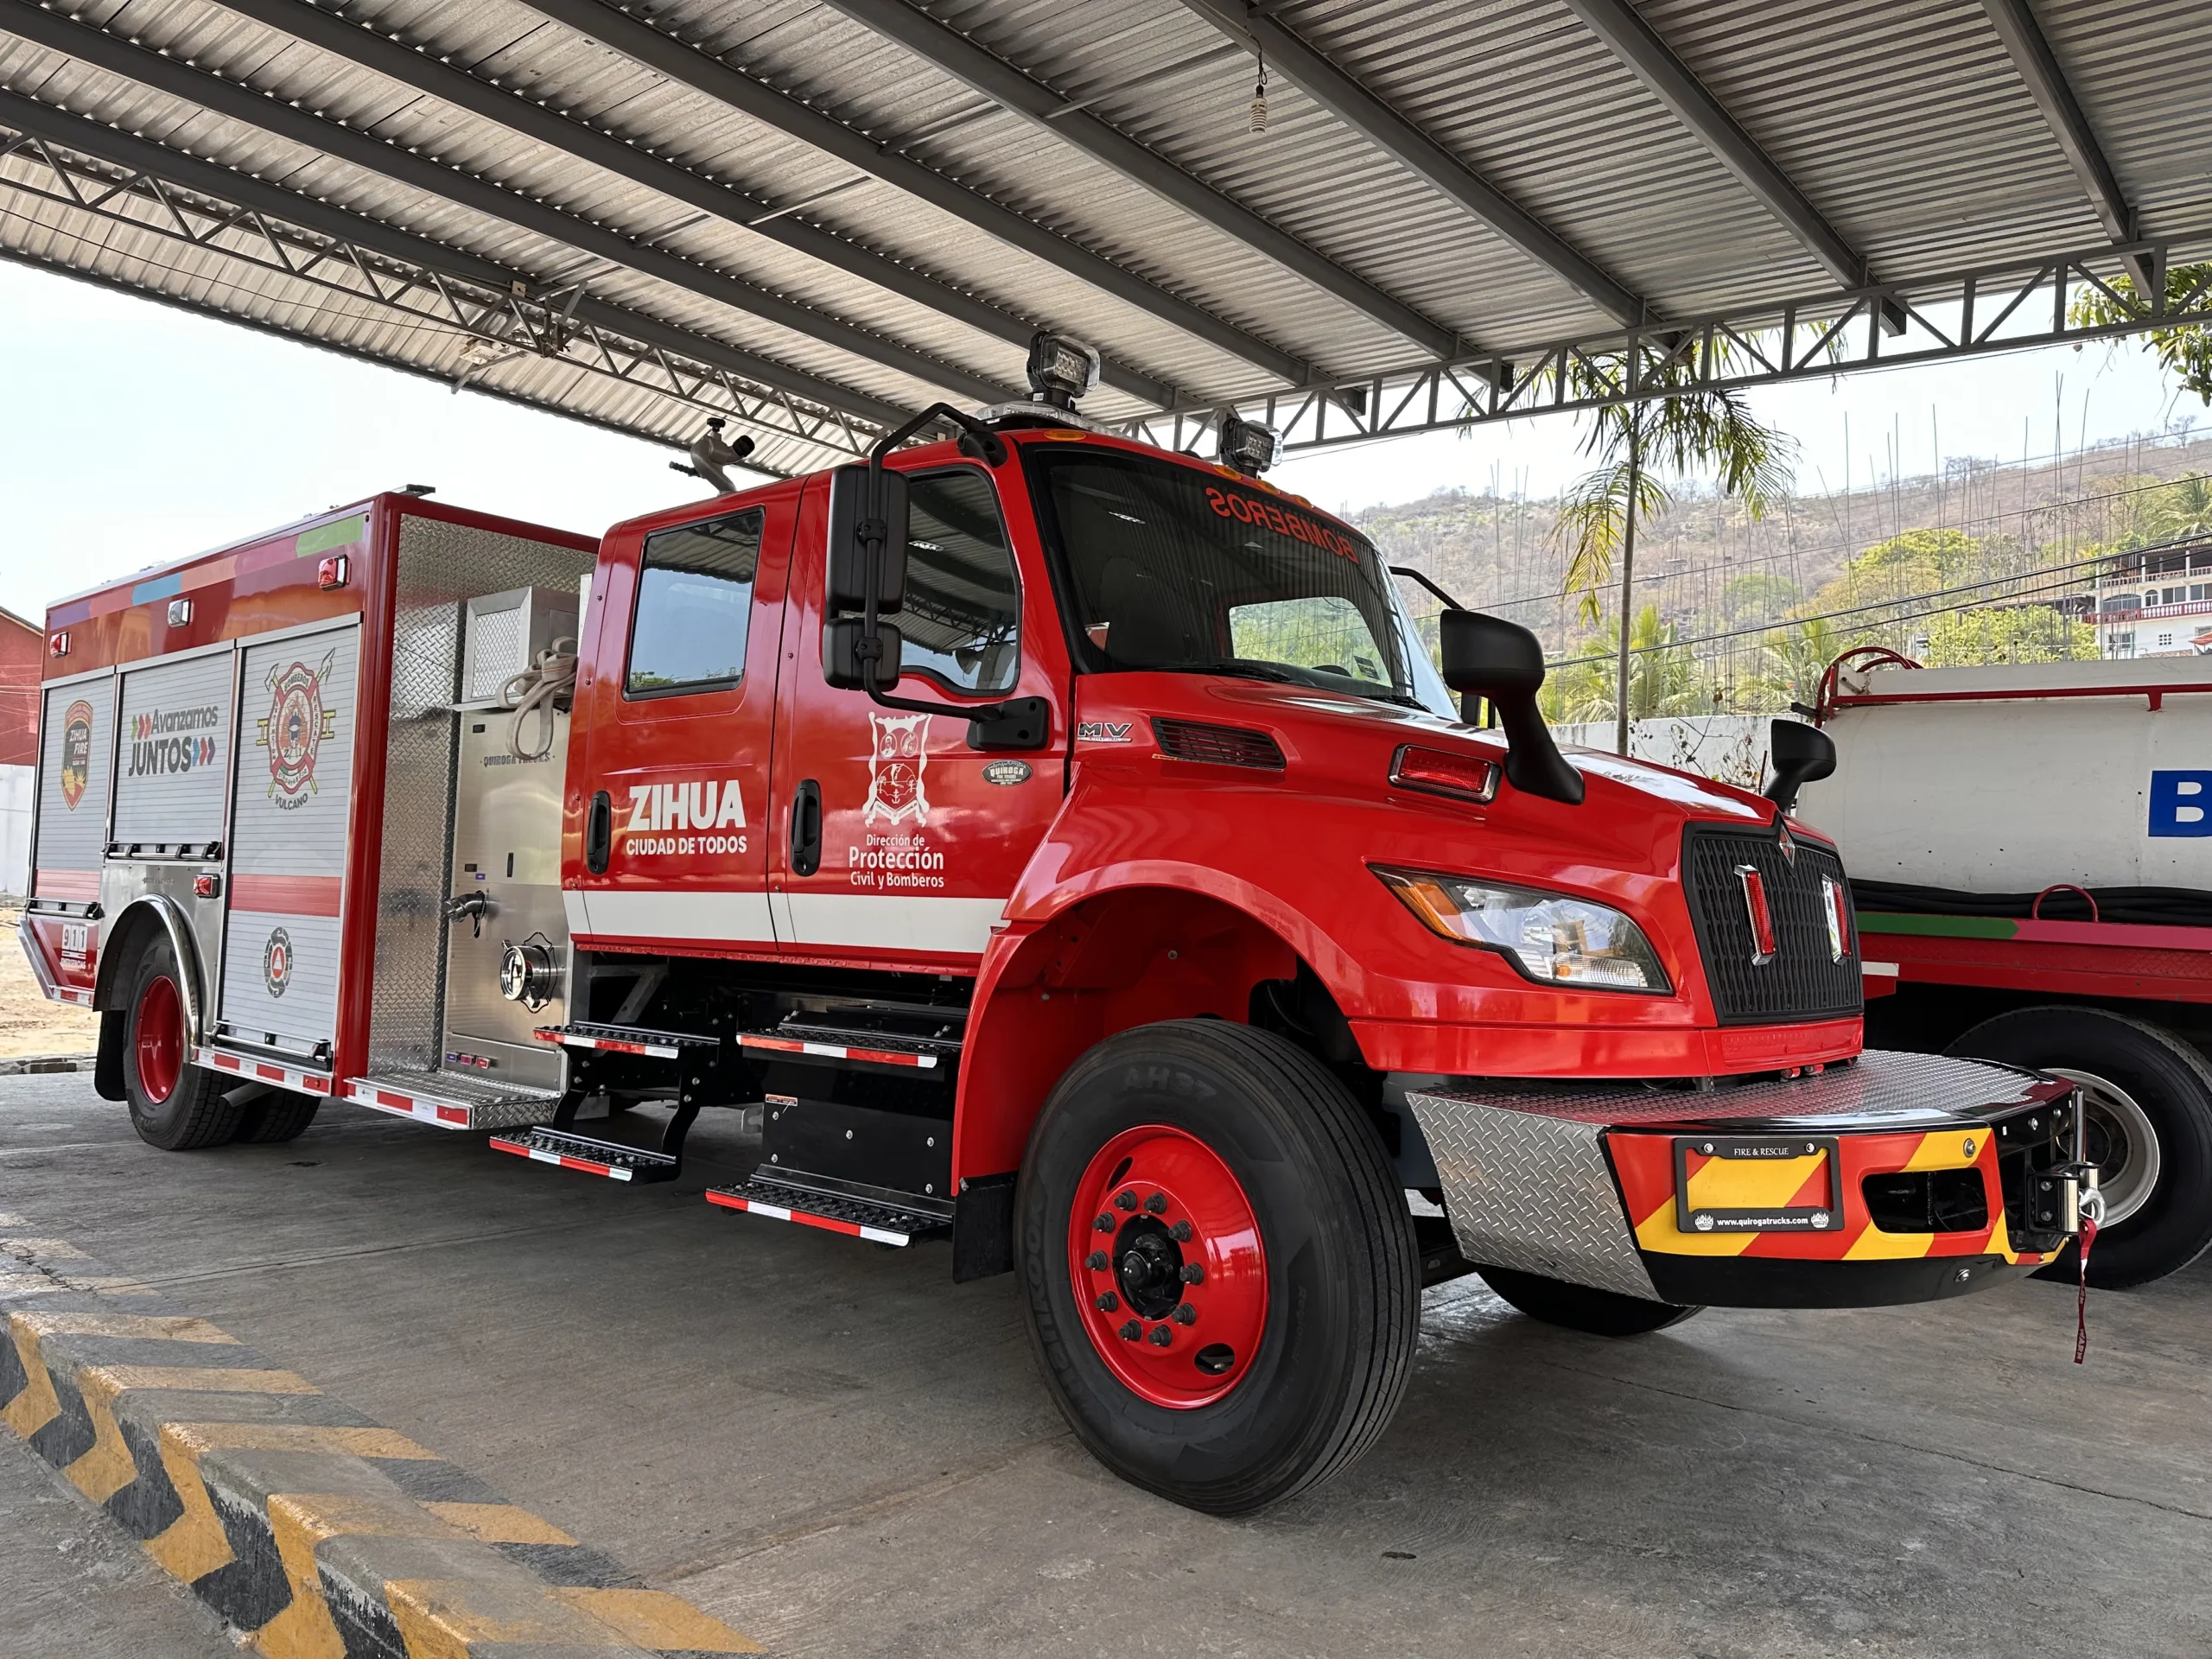 Protección Civil de Zihuatanejo se fortalece con nuevo camión bomba